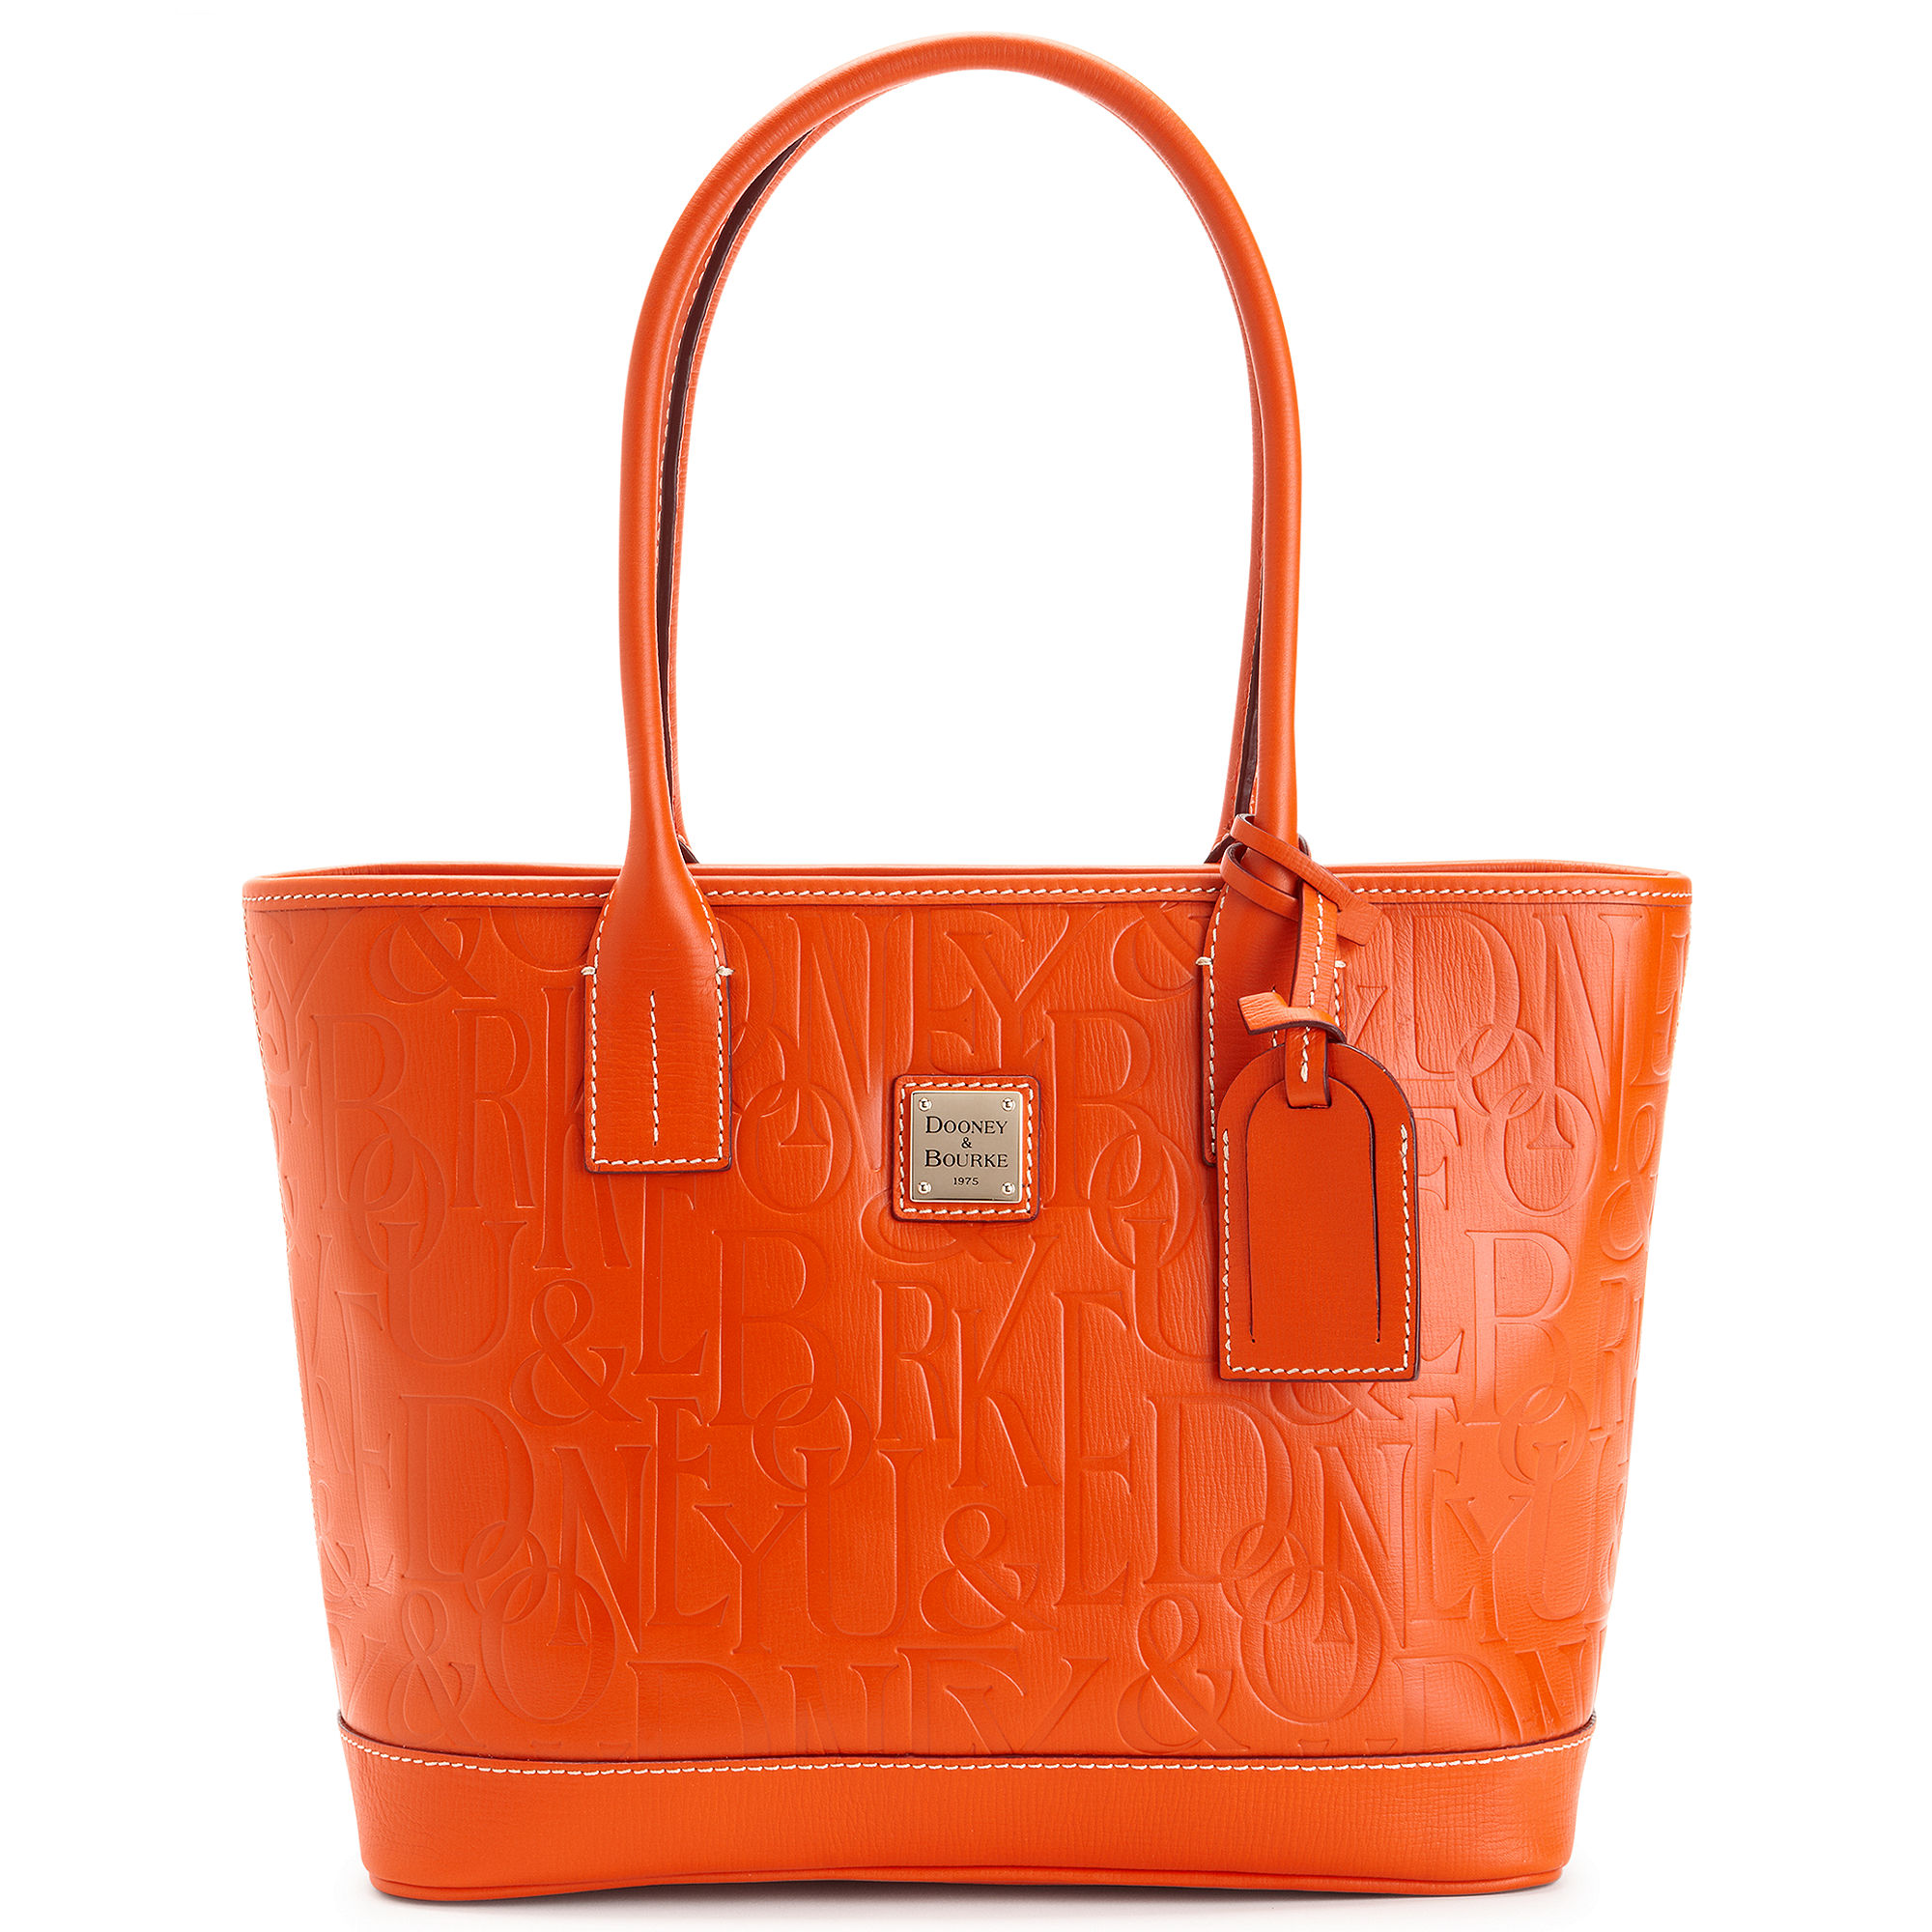 Dooney & Bourke Orange Handbags